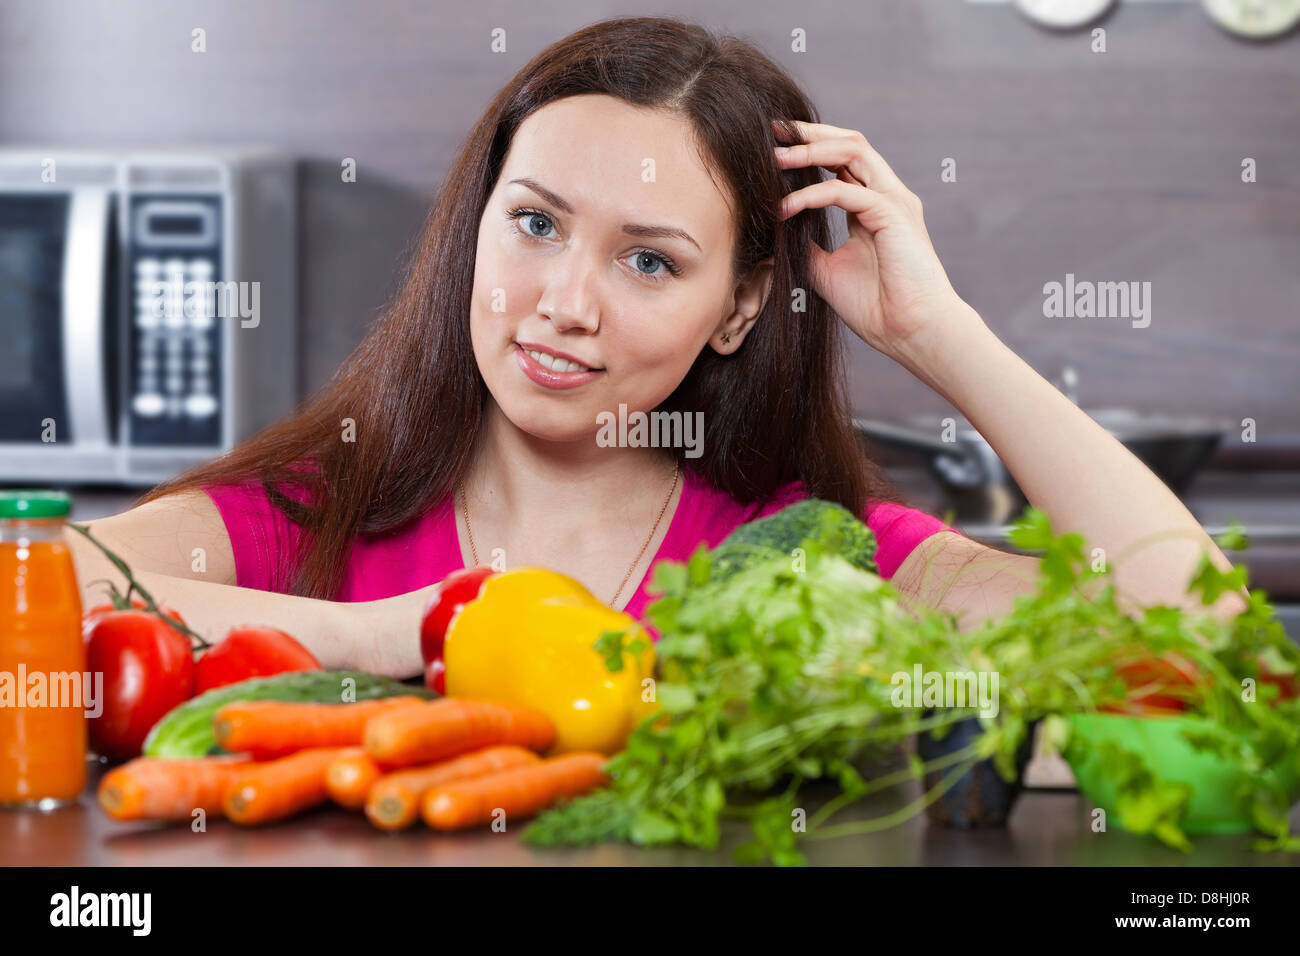 Девушка с овощами. Девушка ест овощи. Женщина ест овощи и фрукты. Похудение девушка овощи.